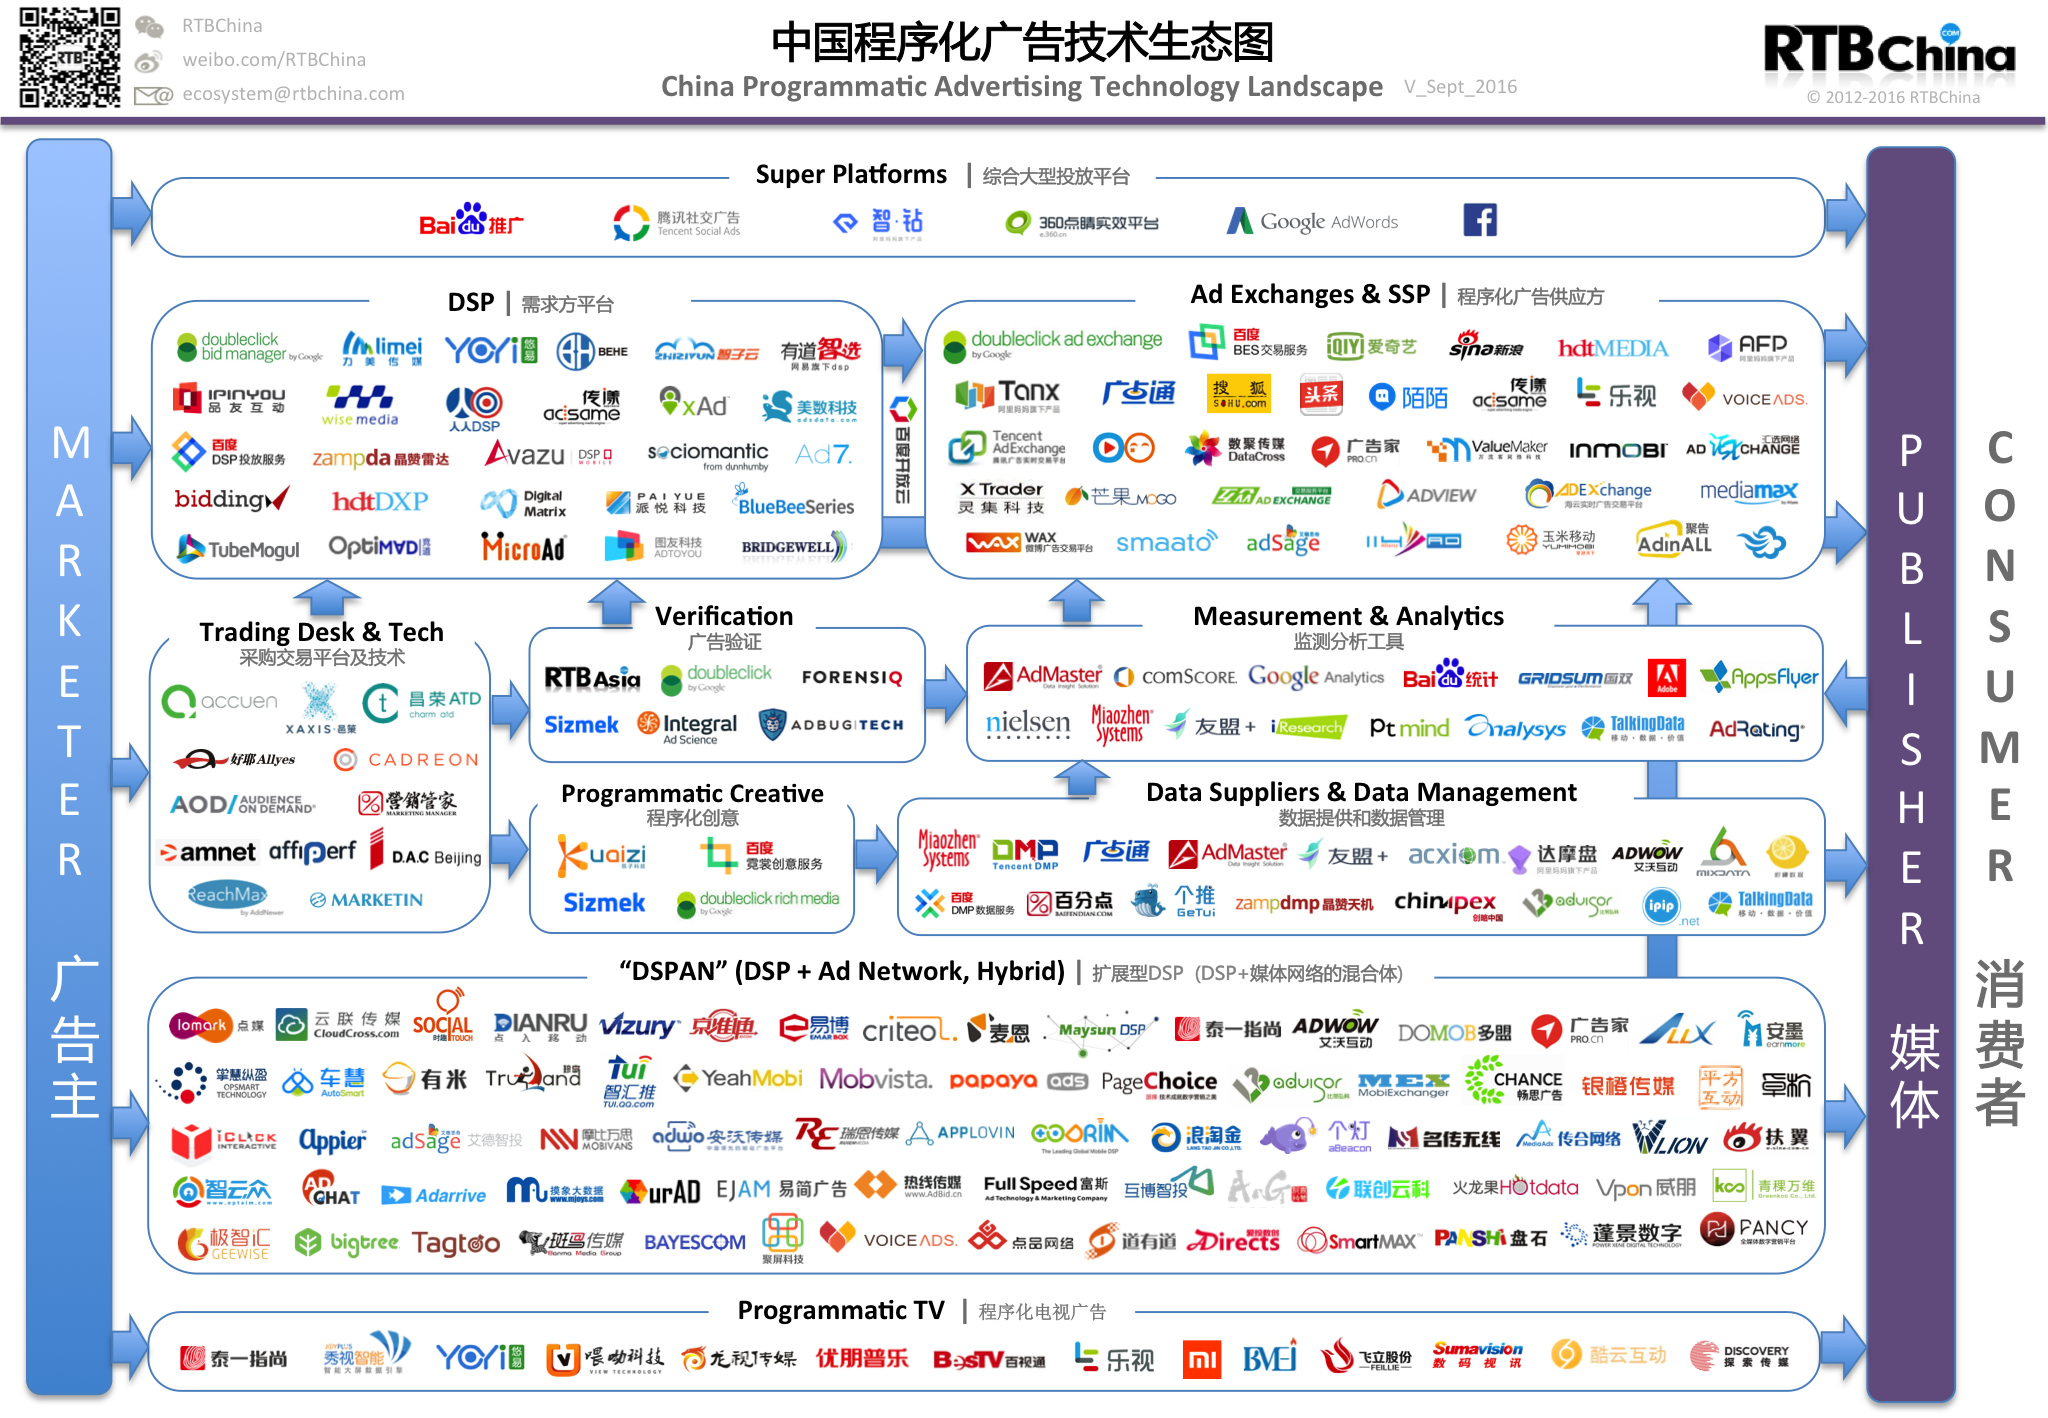 China Programmatic Ad Tech_20160905_Q3_R1_full